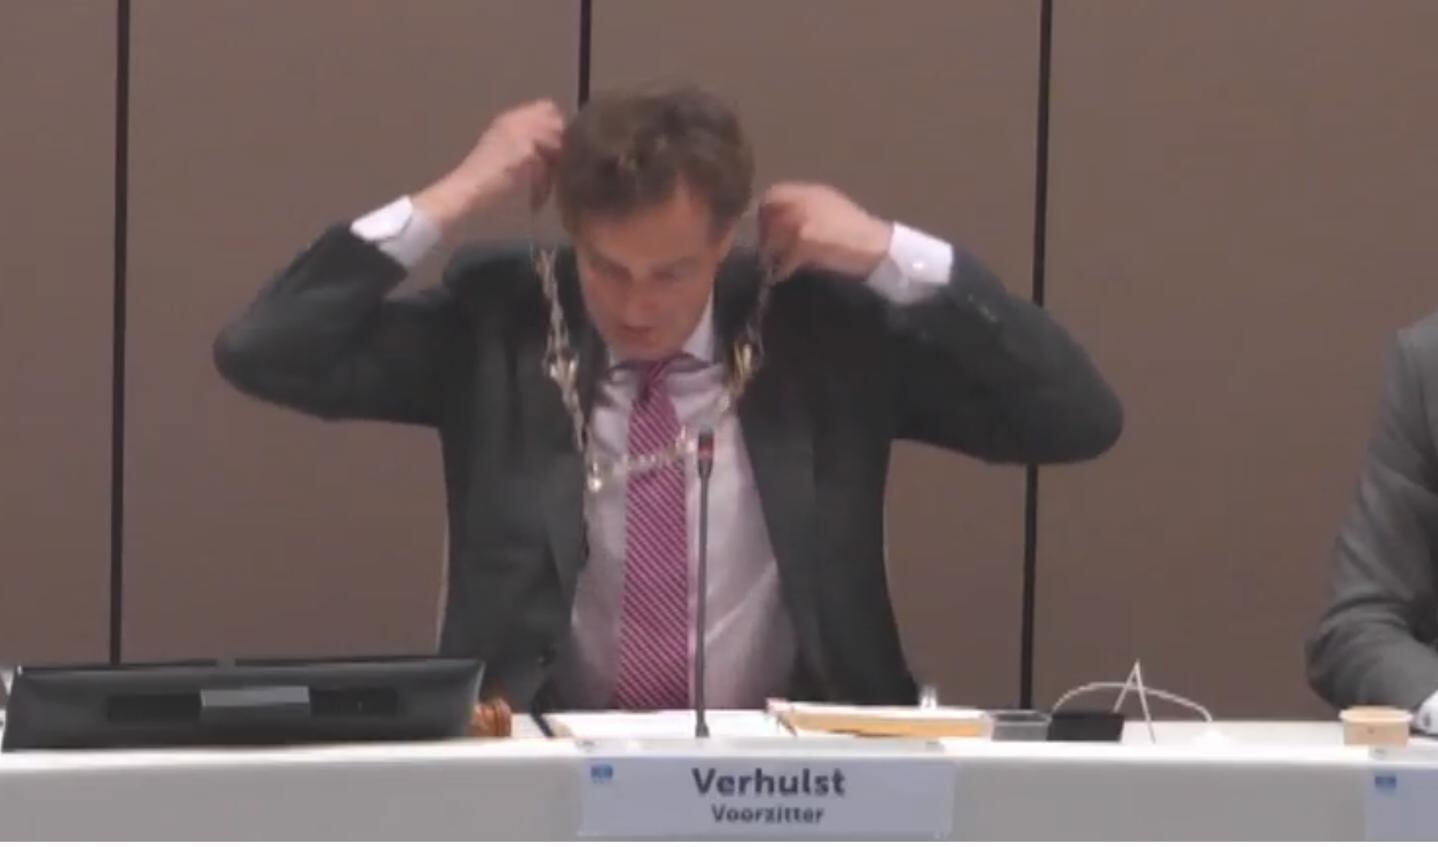 Burgemeester Verhulst doet zijn ambtsketen even af voor instelling vertrouwenscommissie vanwege zijn herbenoeming.